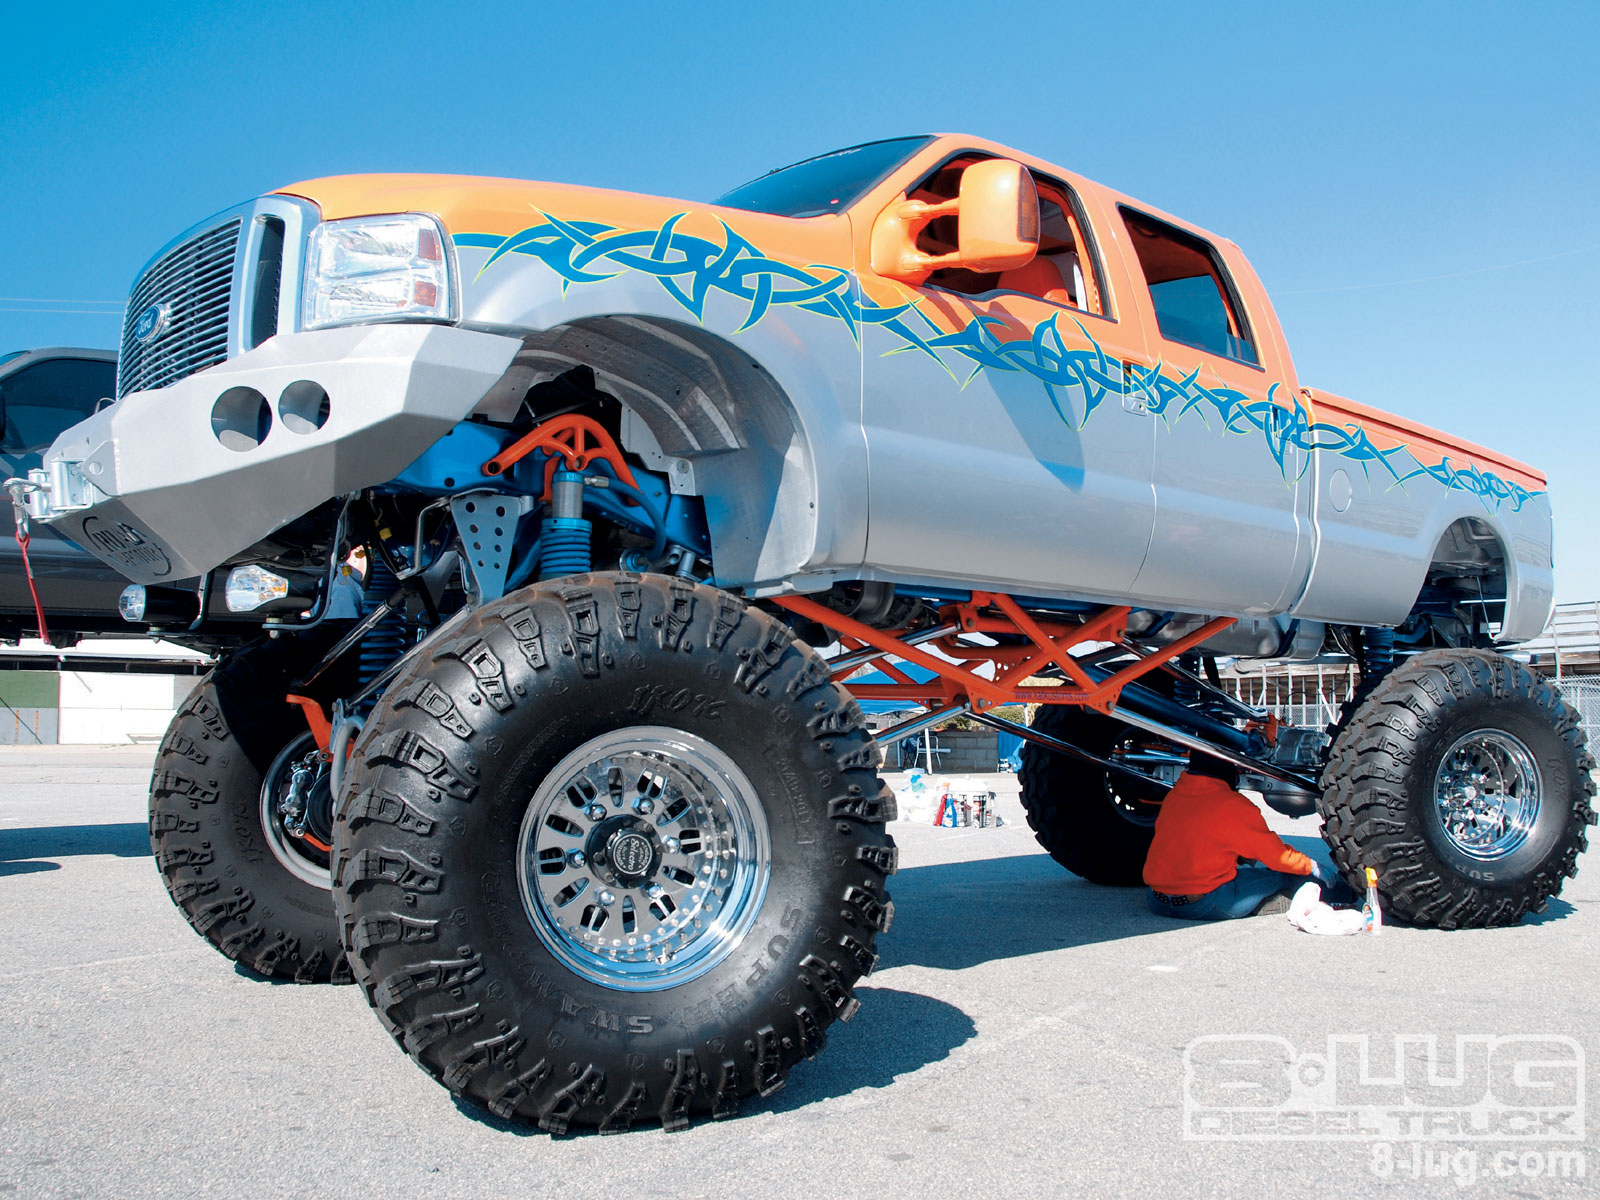 Ford Monster truck